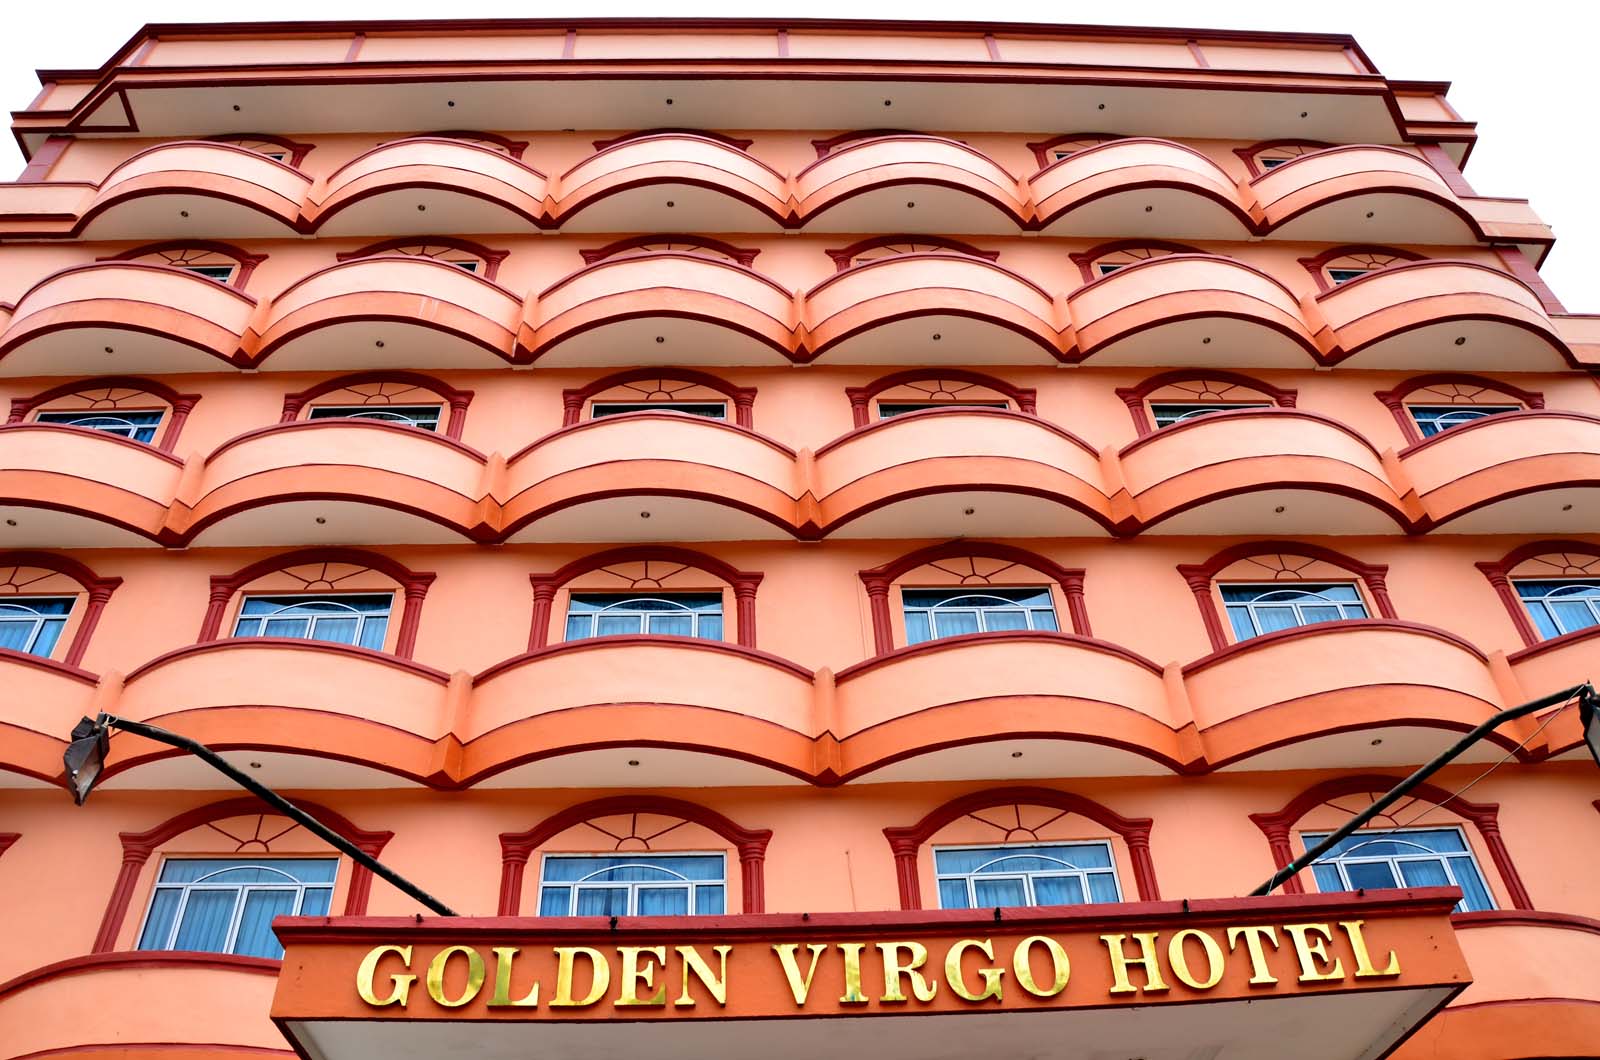 Virgo hotel